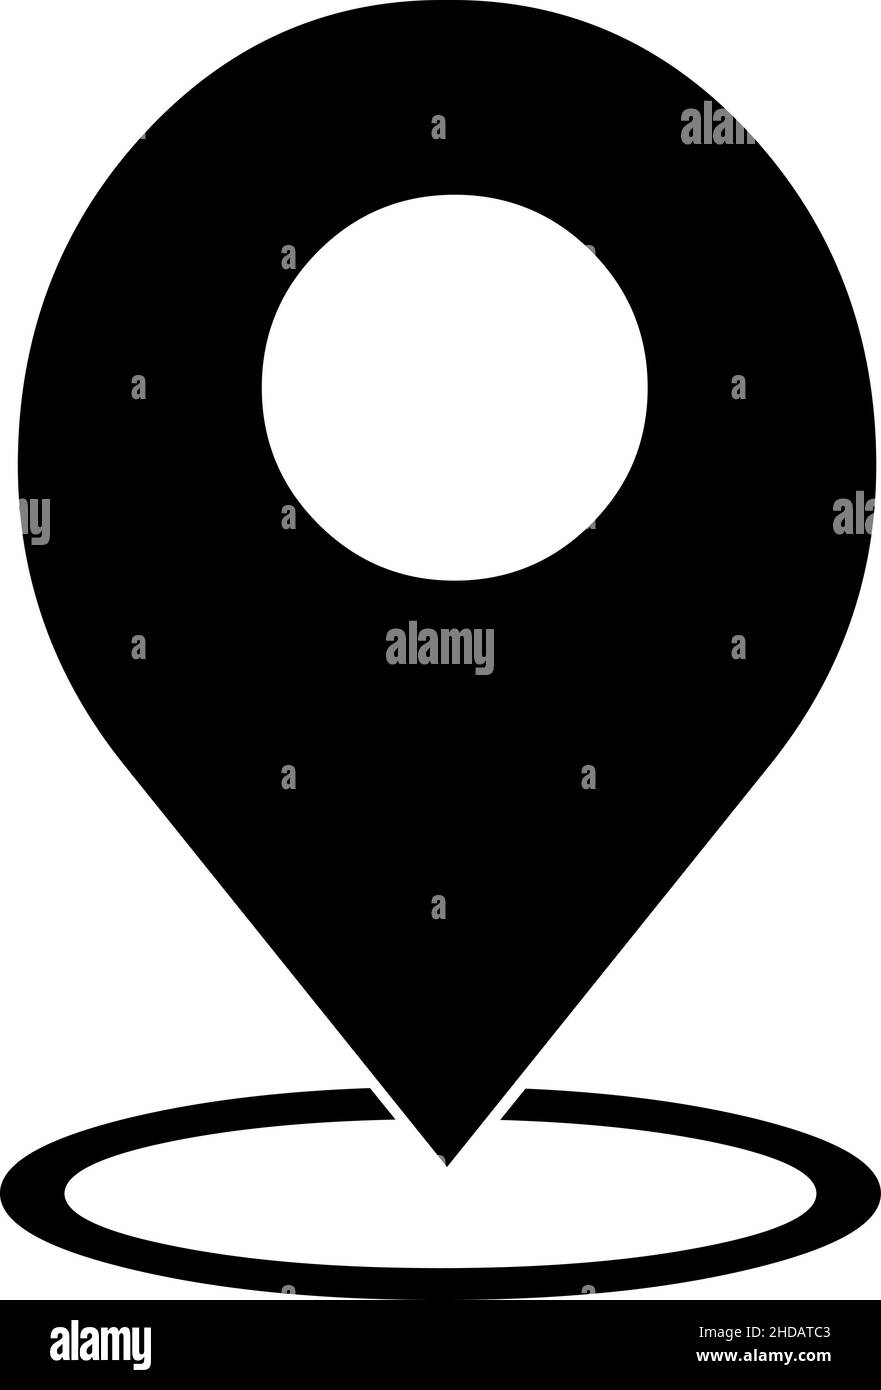 Illustrazione vettoriale della silhouette nera dell'icona gps (Global Positioning System) Illustrazione Vettoriale